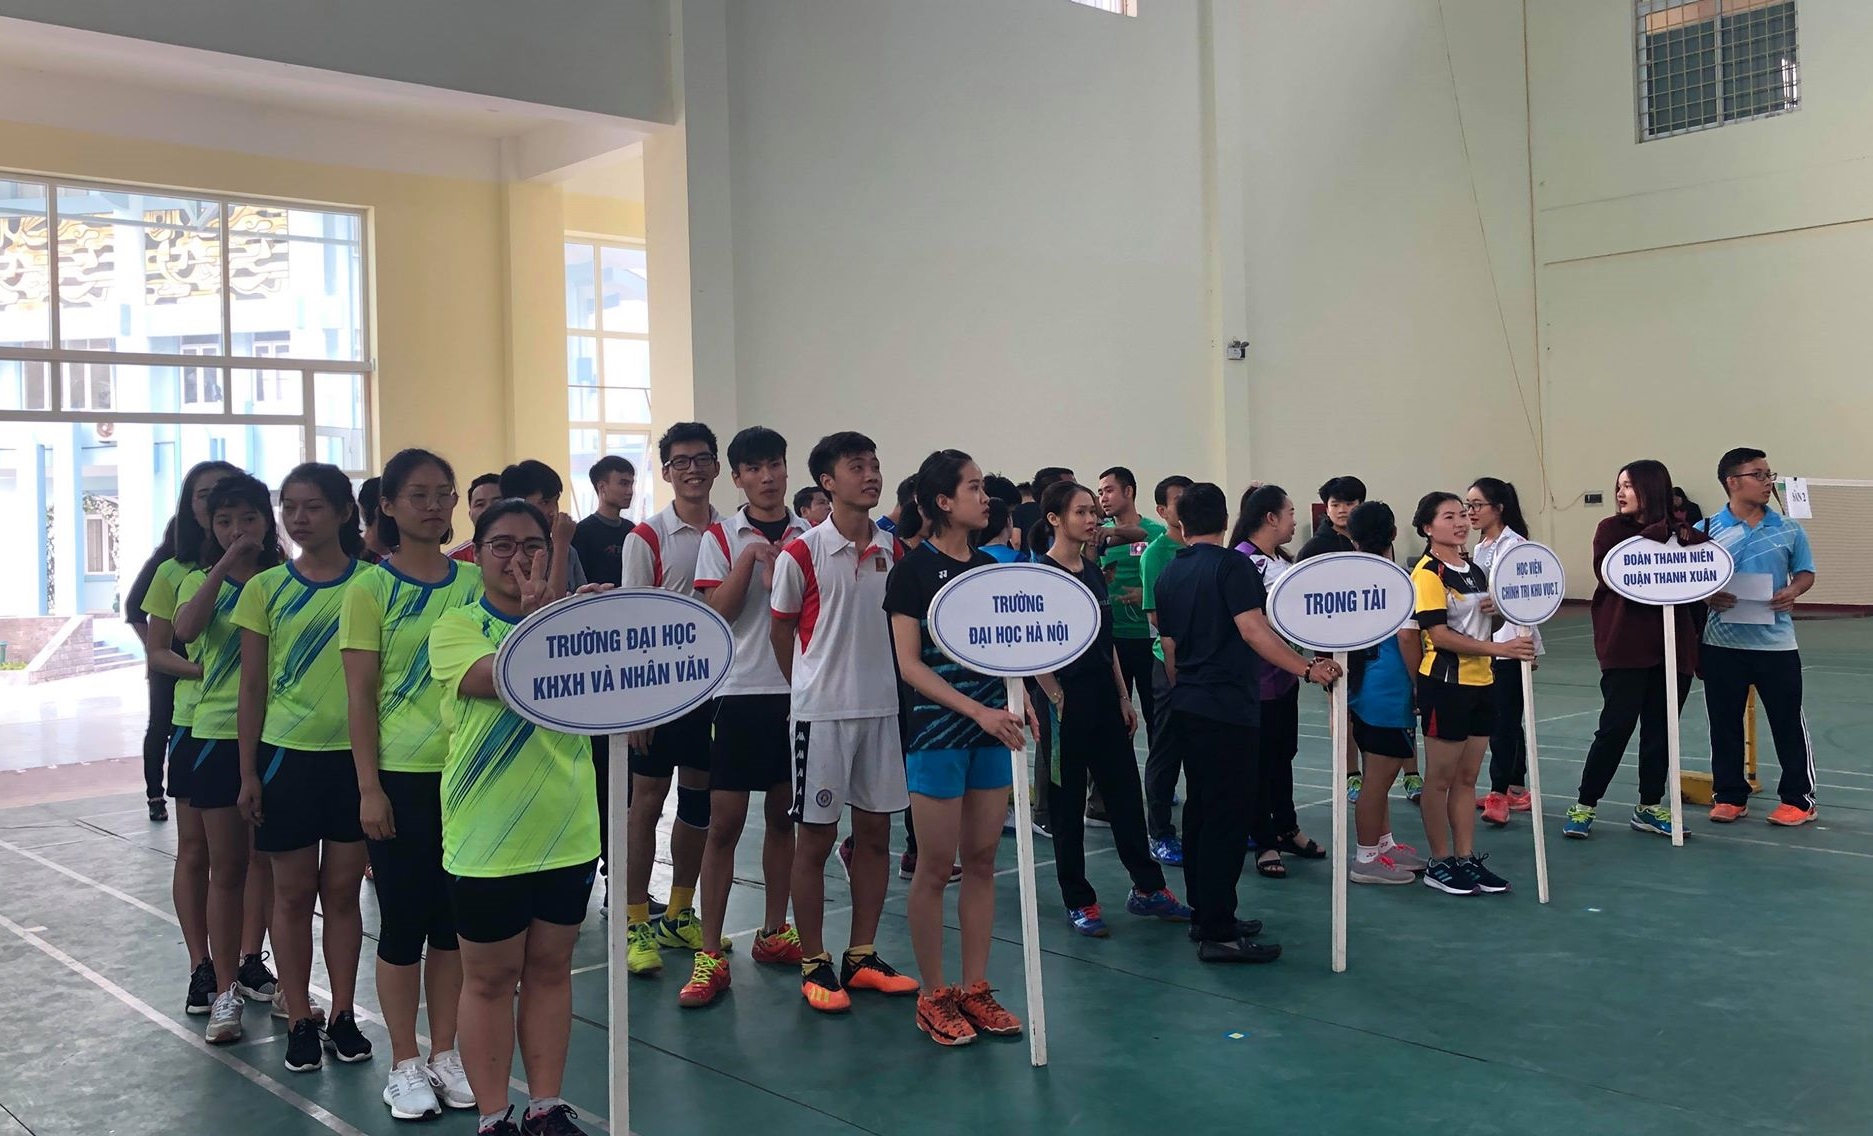 Trường ĐHKHXH&NV tham dự giải cầu lông Quận Thanh Xuân 2018